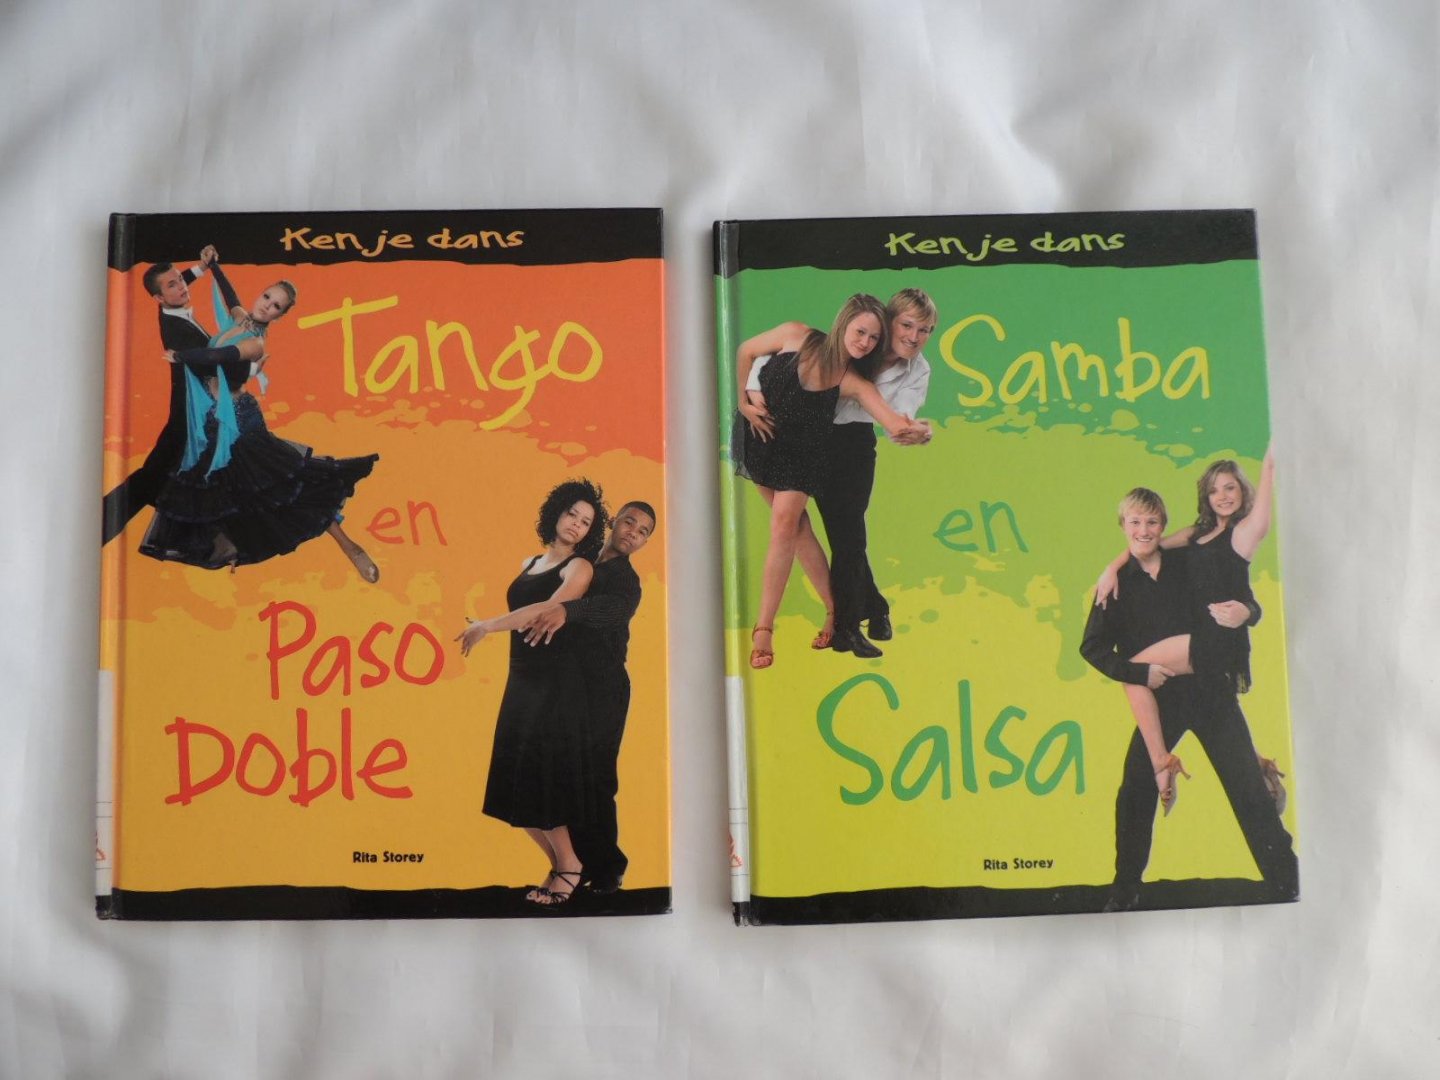 Rita Storey - Ken je dans - Samba en Salsa /// Tango en Paso Doble Pasodoble